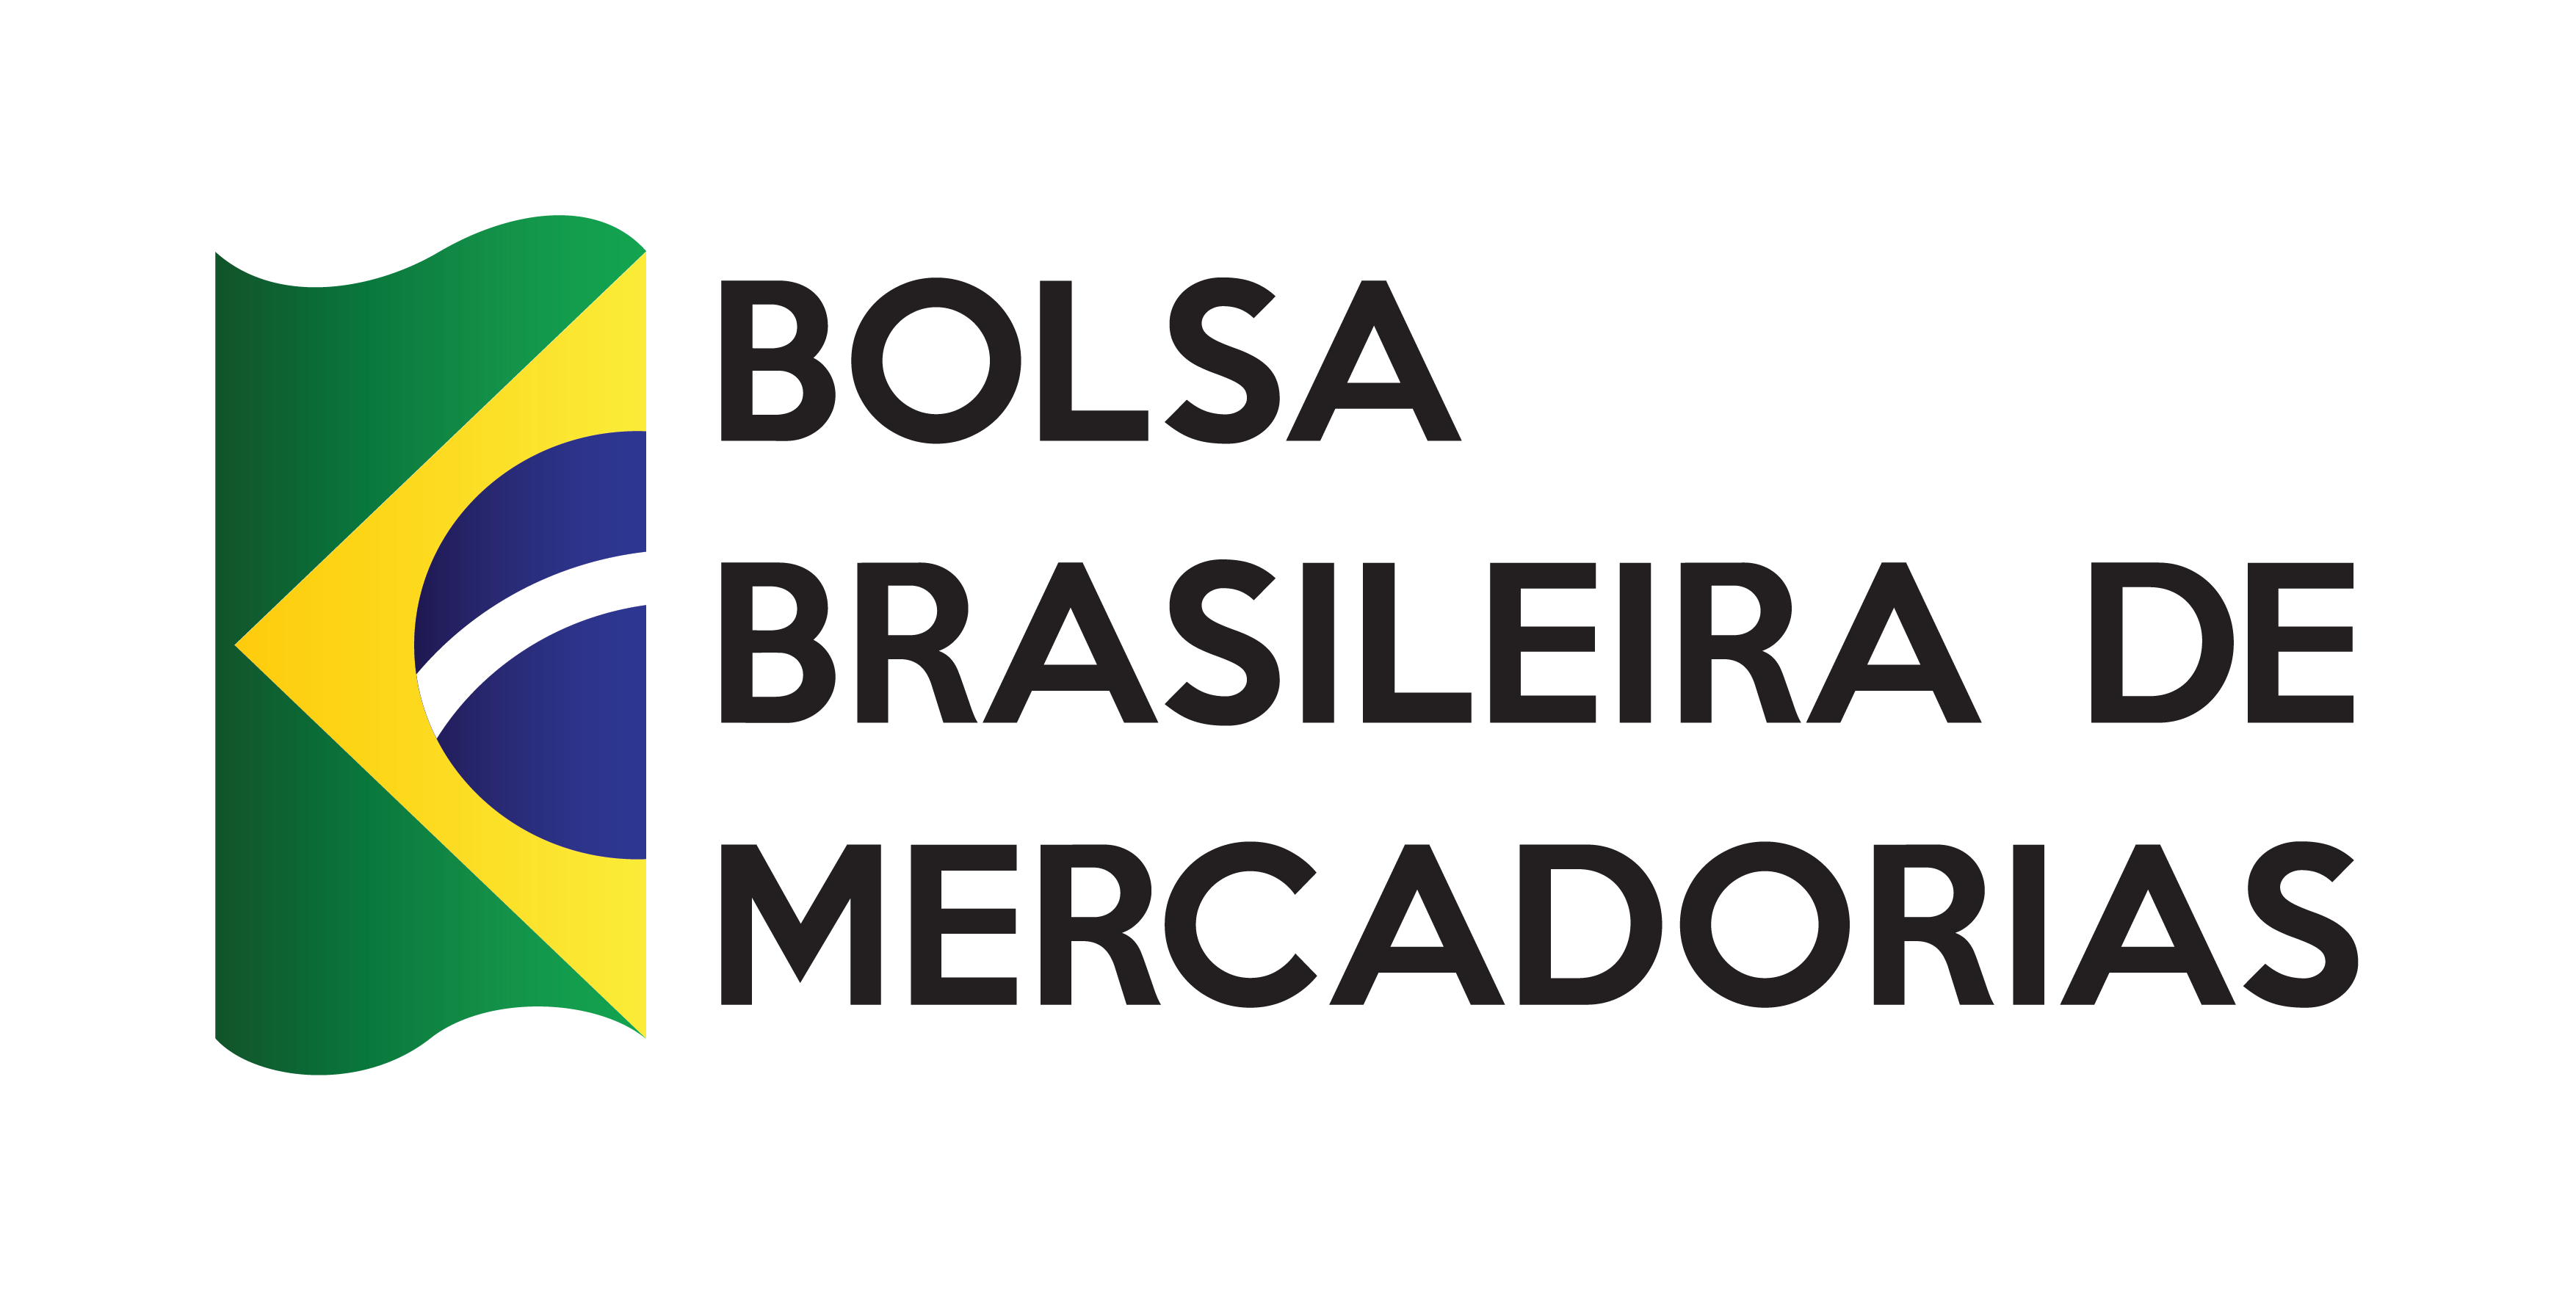 Bolsa Brasileira de Mercadorias.png